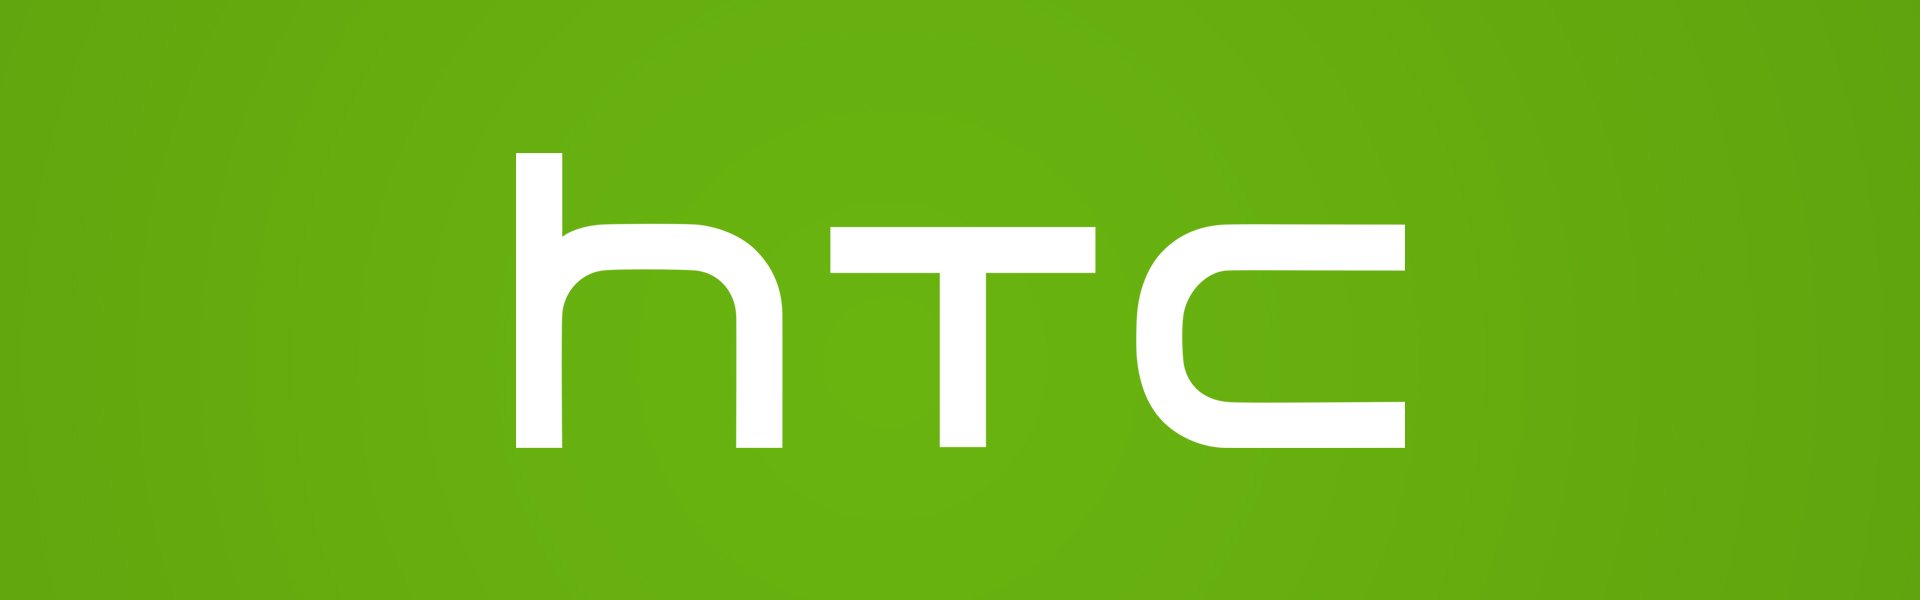 HTC B0P6B100 Oriģināls Akumulators One M8 Li-Ion 2600mAh 35H00214-00M (OEM) HTC